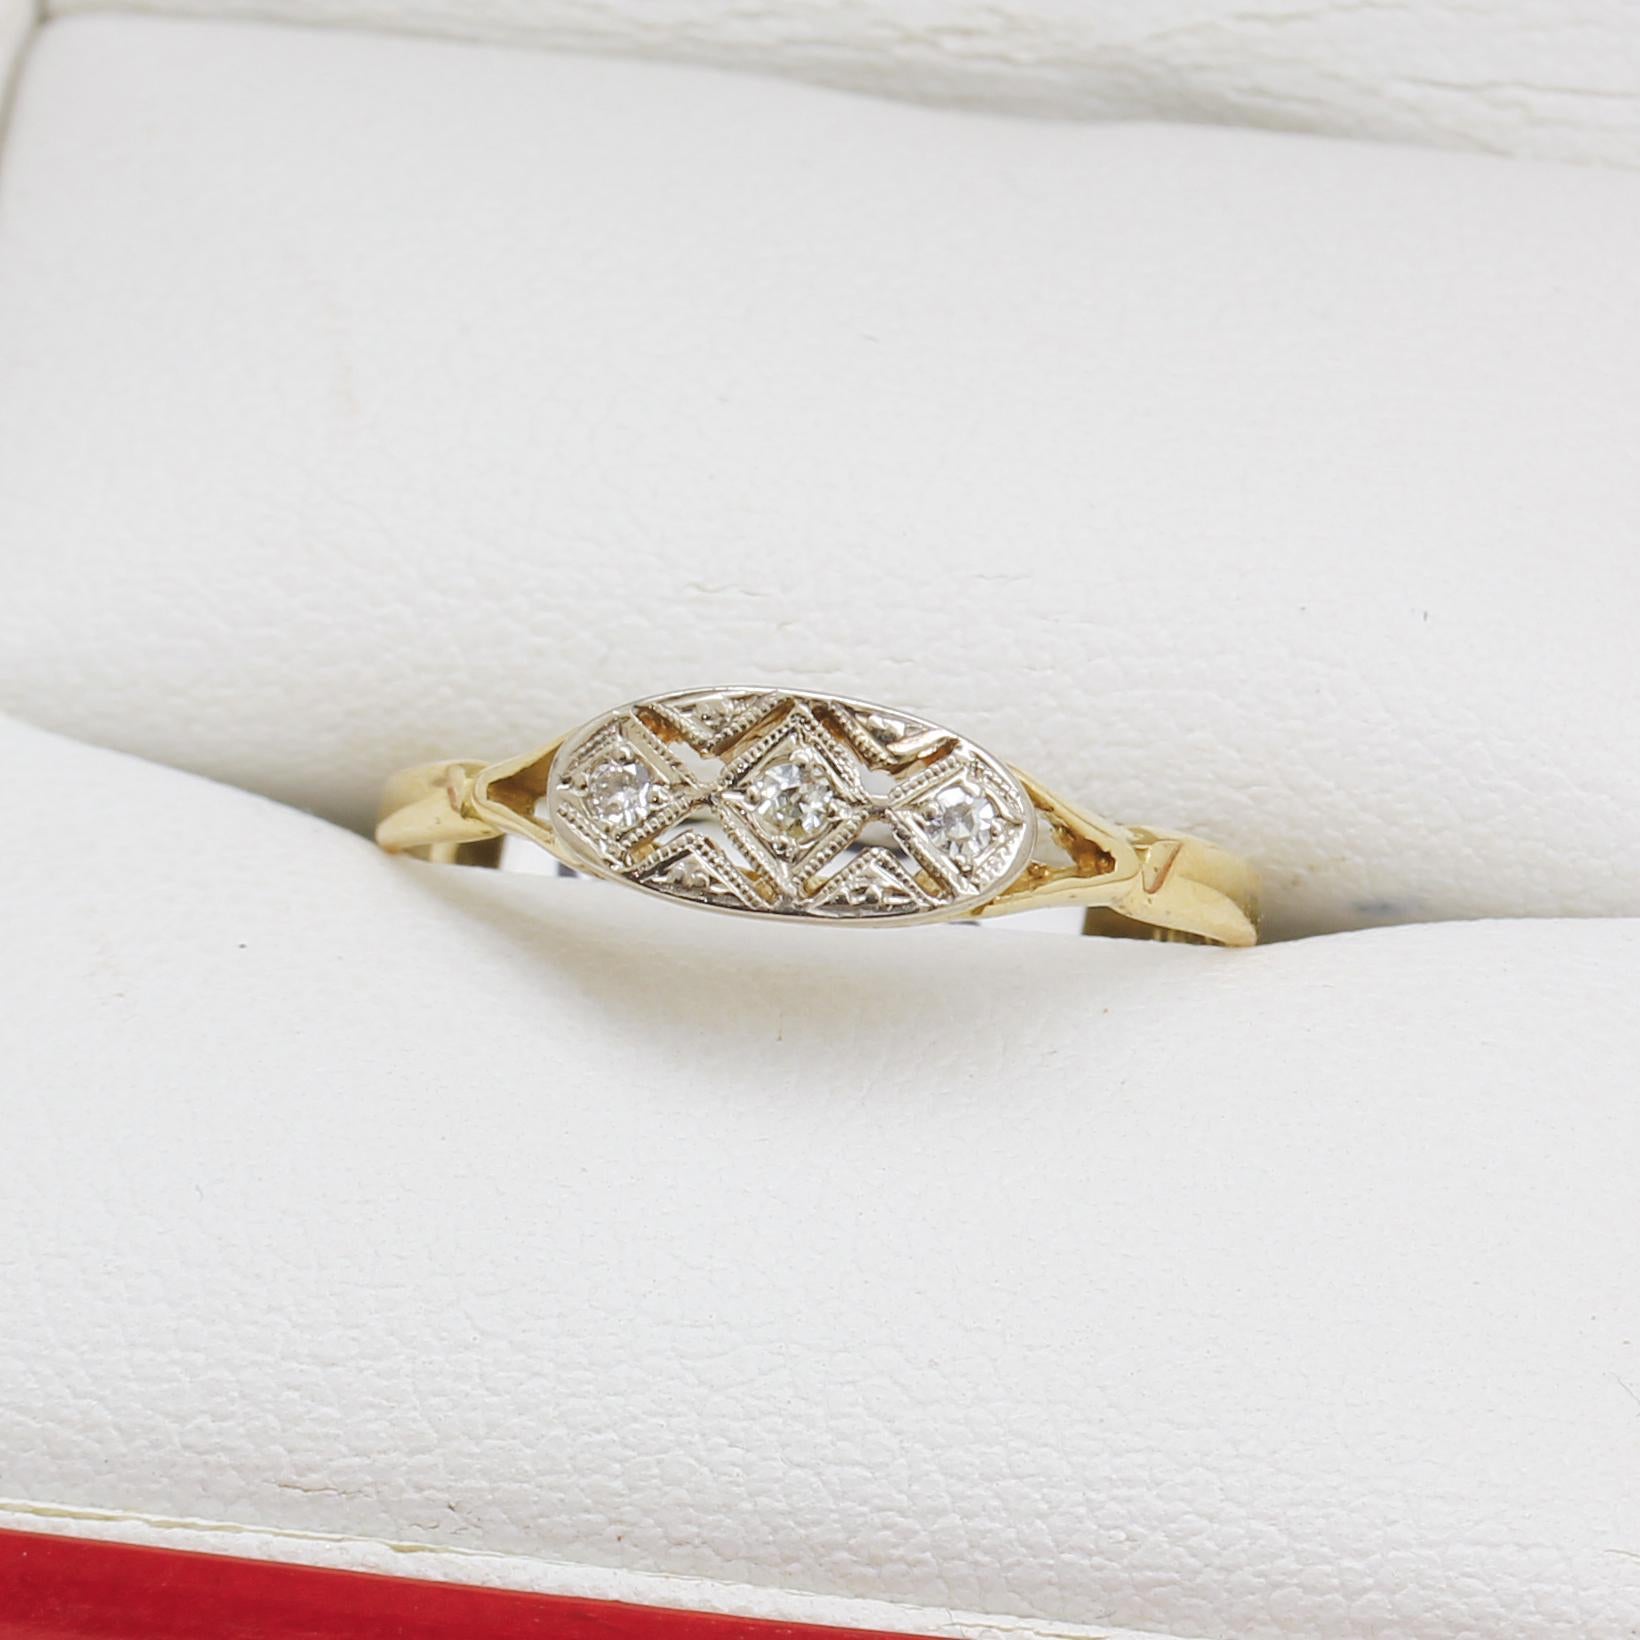 Art Deco Drei Stein Diamant Ring
18 Karat und Platin Fassung
Gestempelt - 18ct PLAT
Diamanten - Ø 1mm
Größe der Vorderseite 5mm x 10mm 
Gewicht 1.7g
Größe Q - Kann in der Größe verändert werden